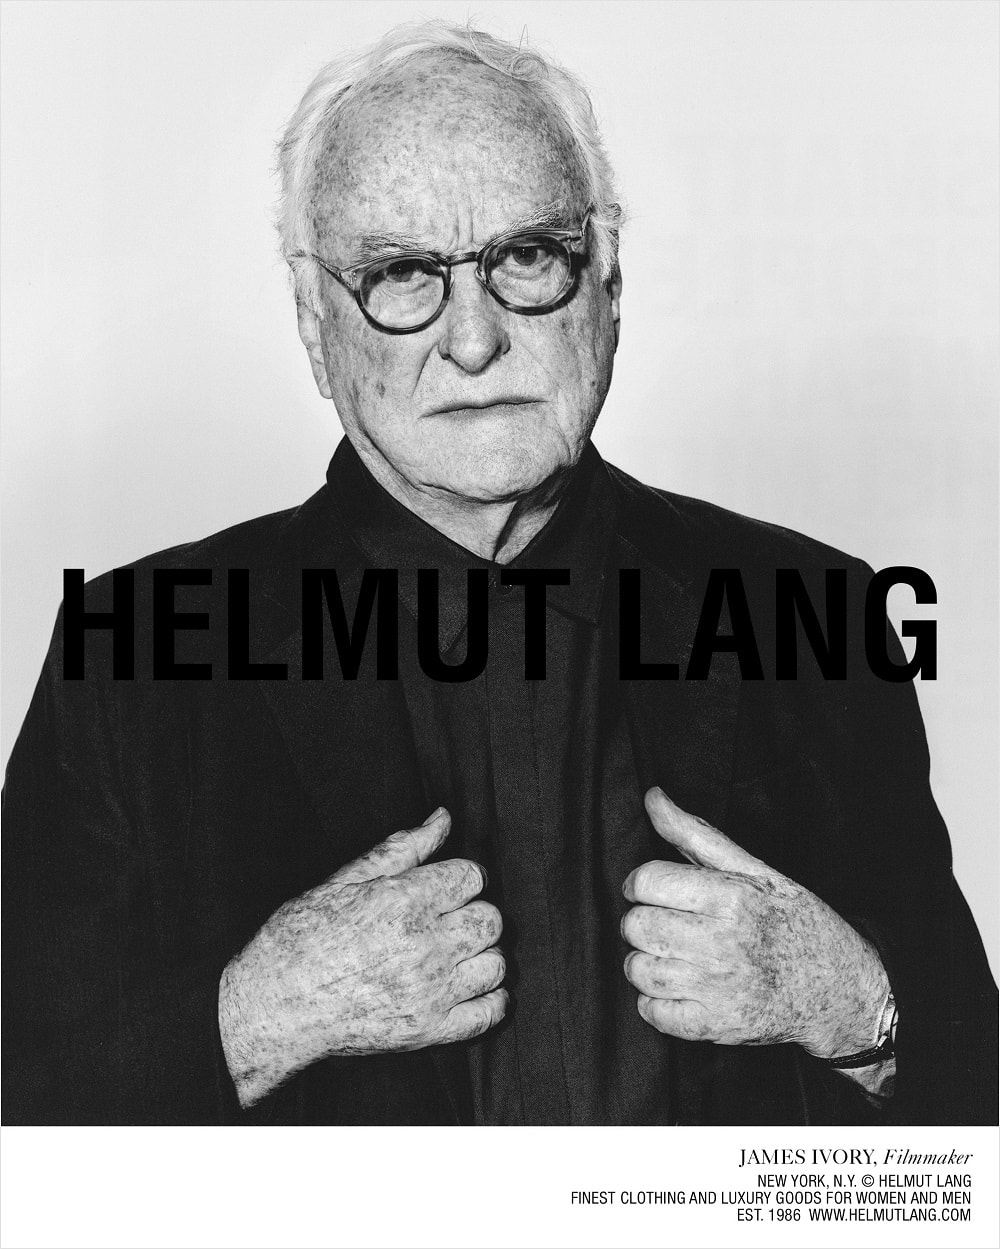 Helmut Lang's subversive campaigns